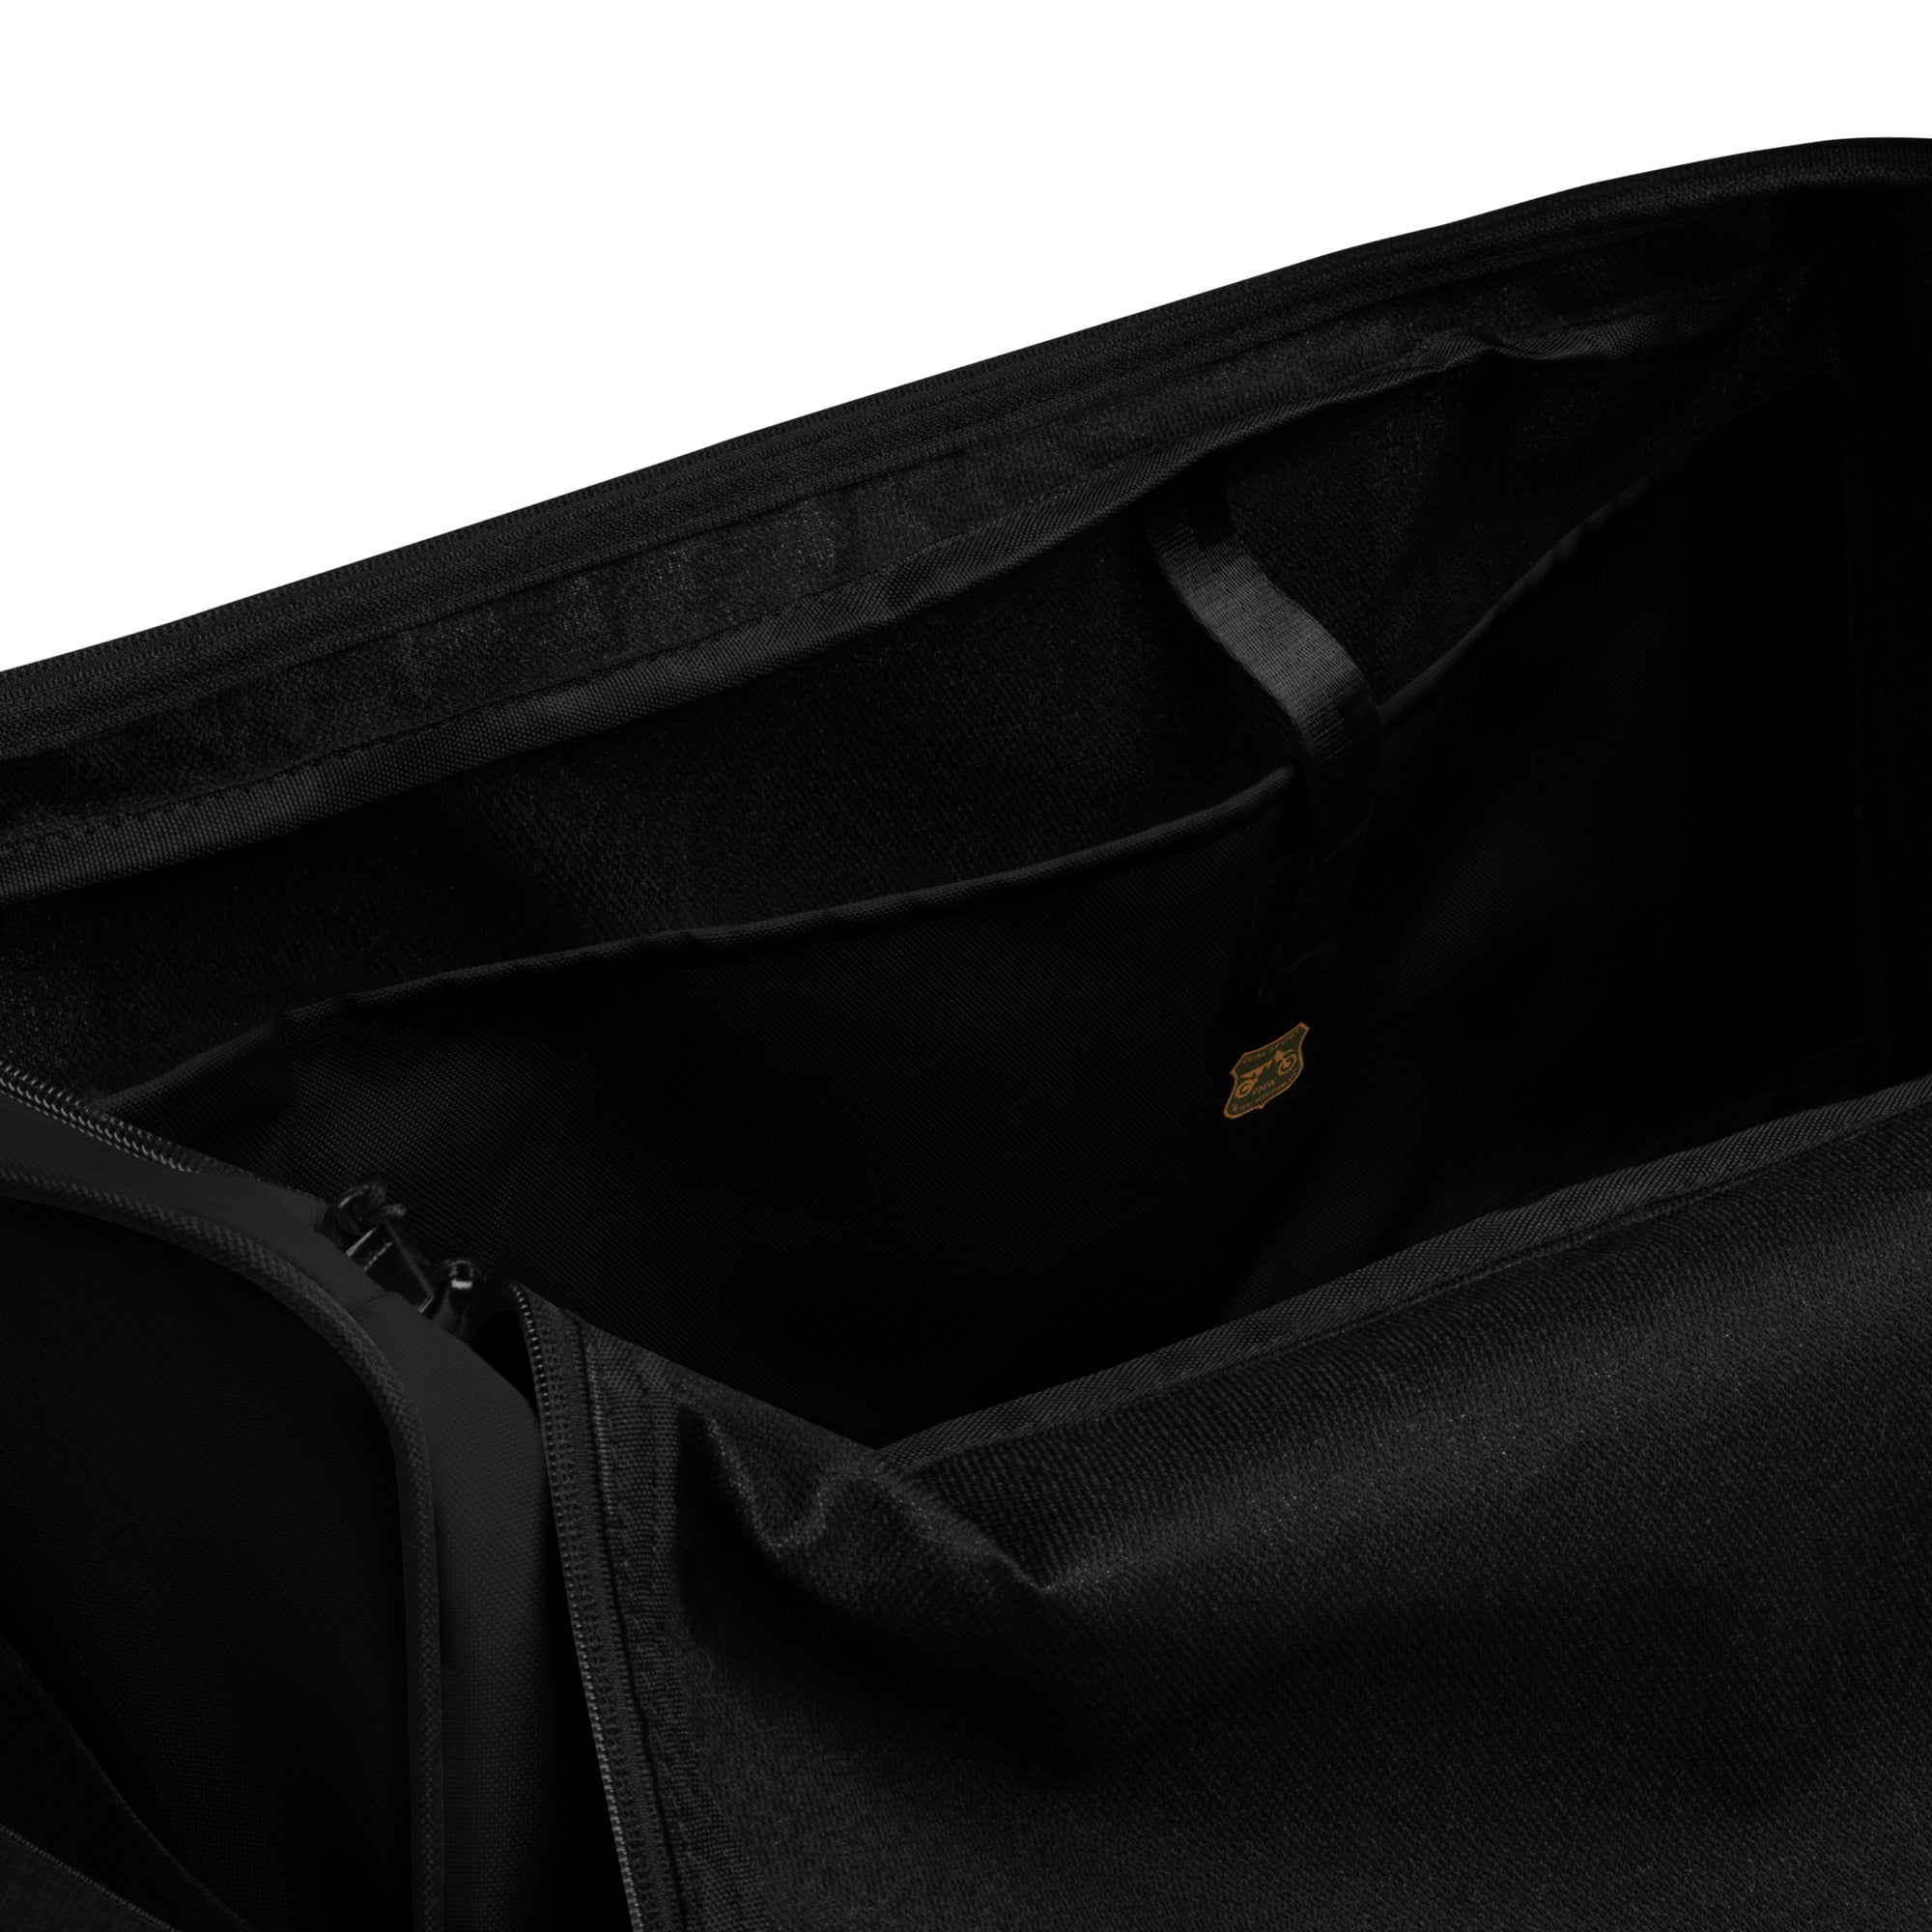 PNWDS Bag, Gear, Black